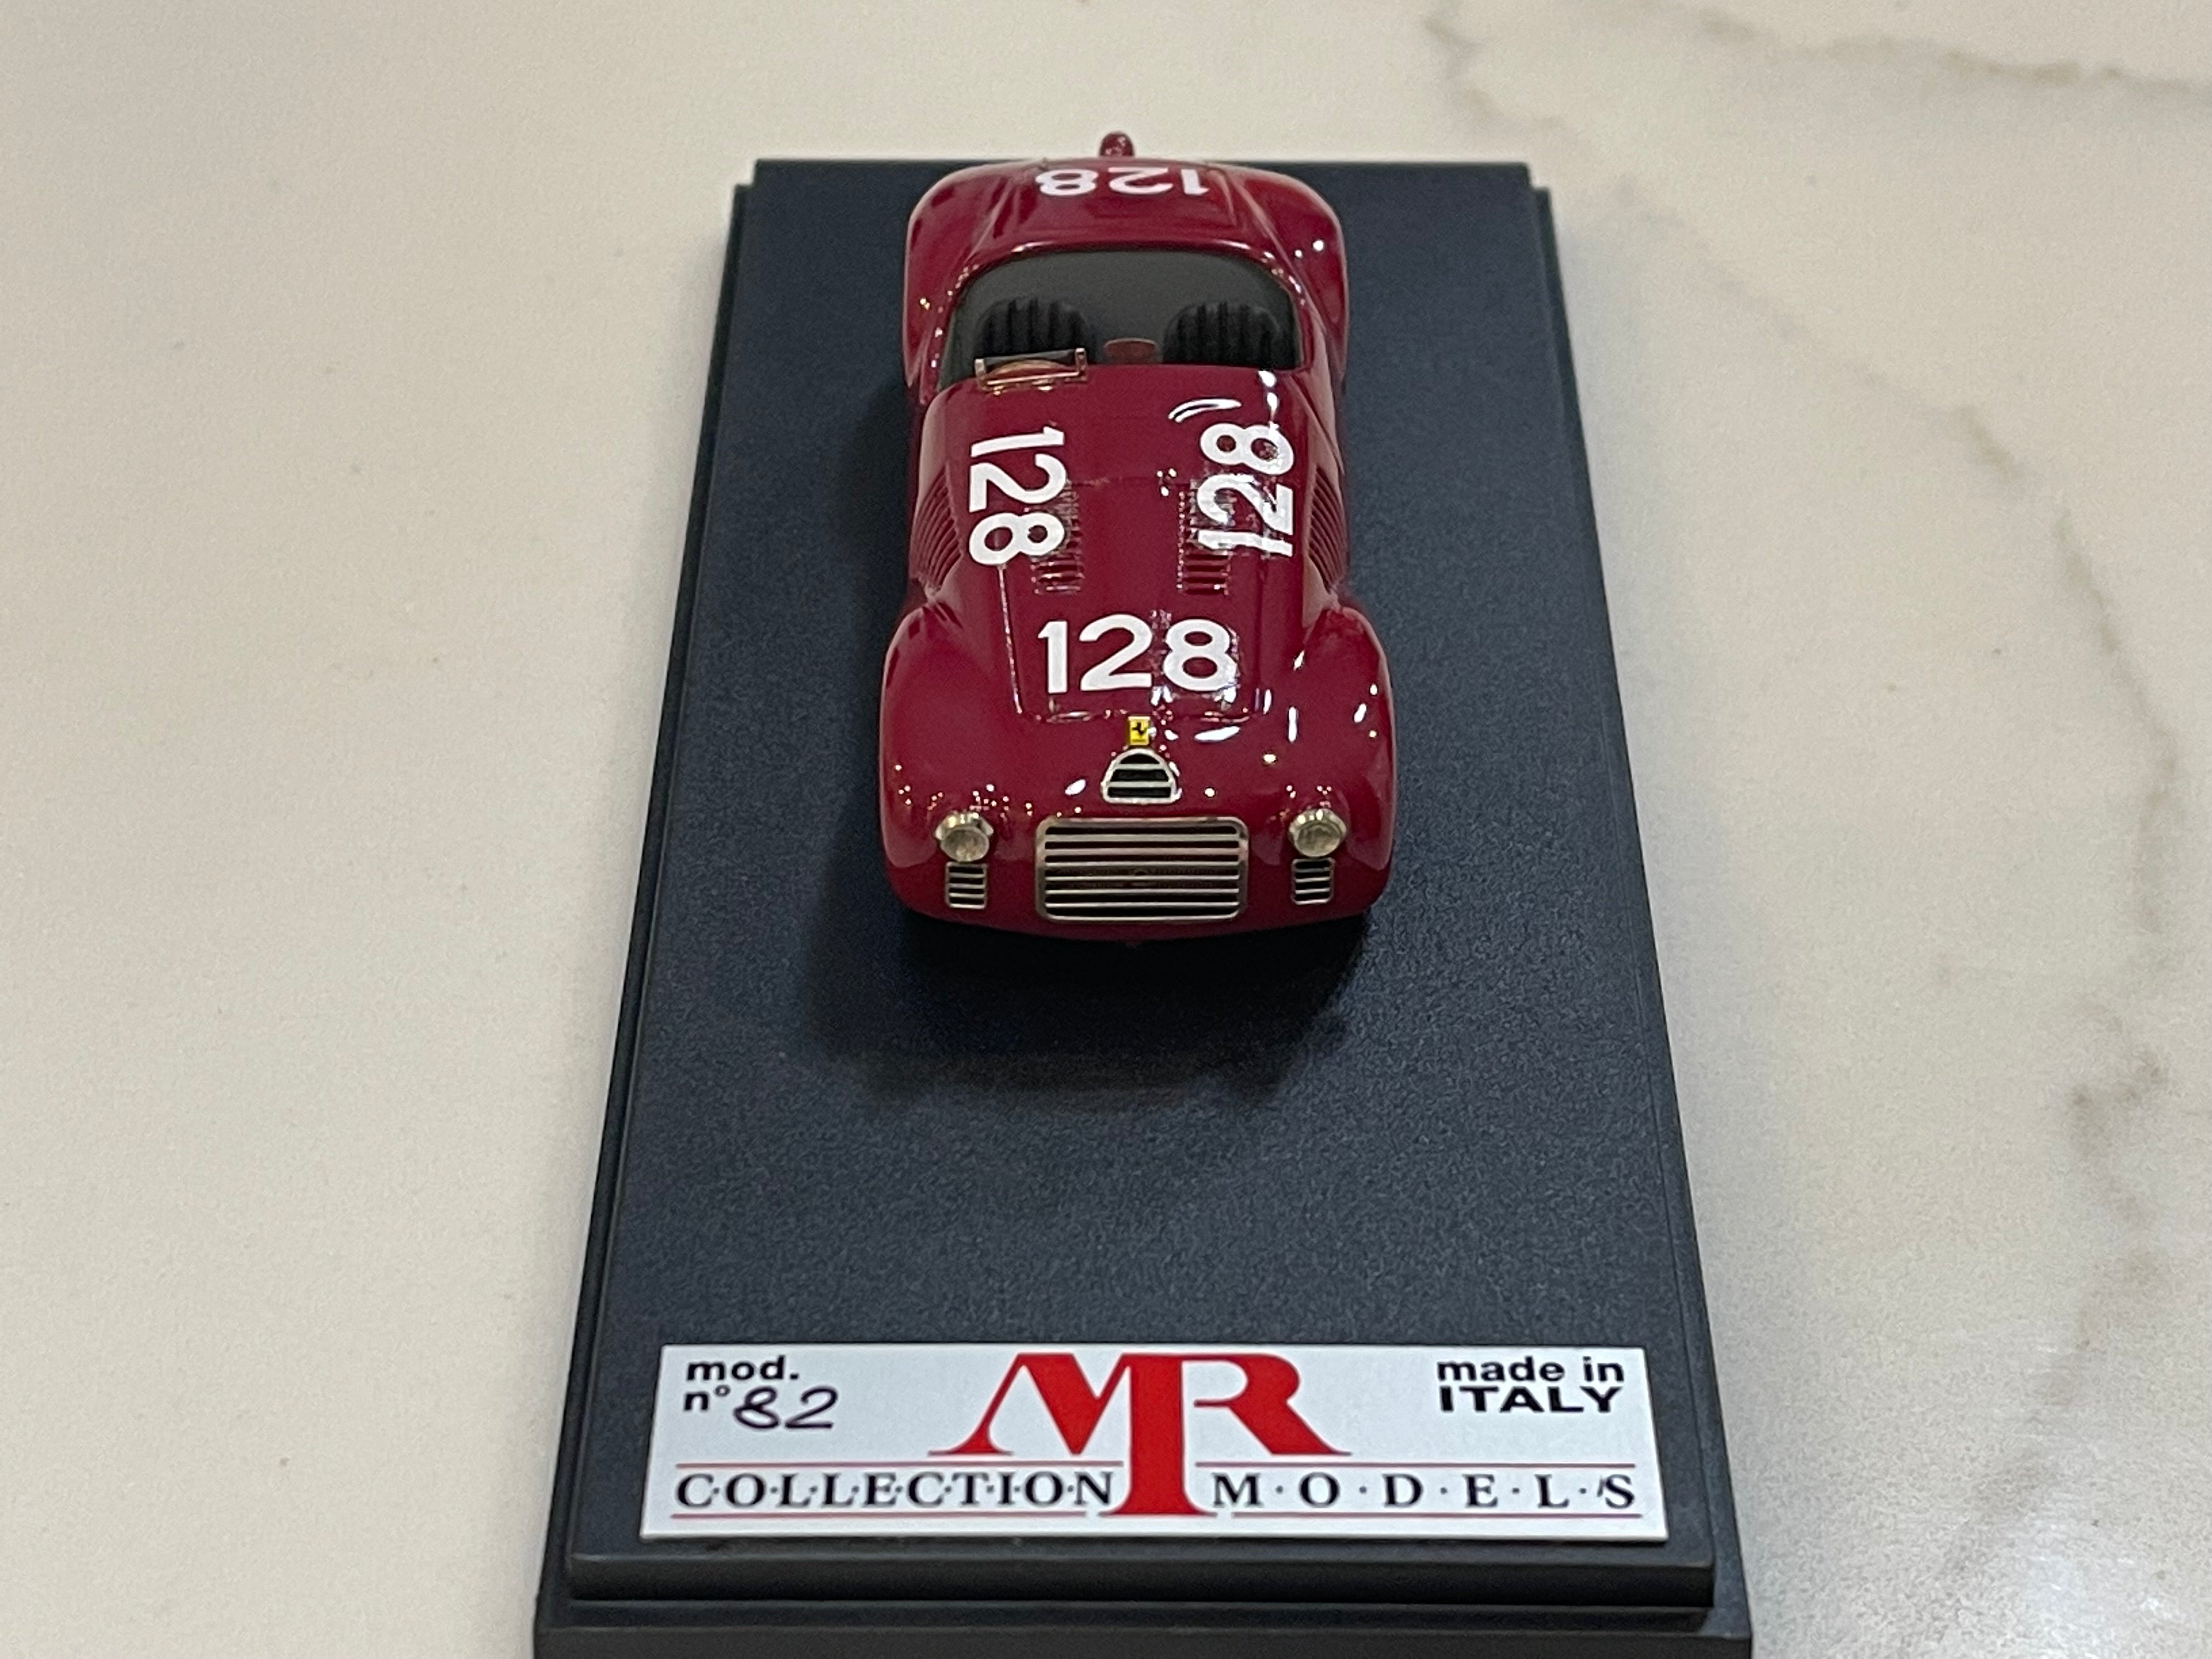 MR 1/43 Ferrari 125 Sport GP Pescara 1947 Dark Red No. 128 MR03